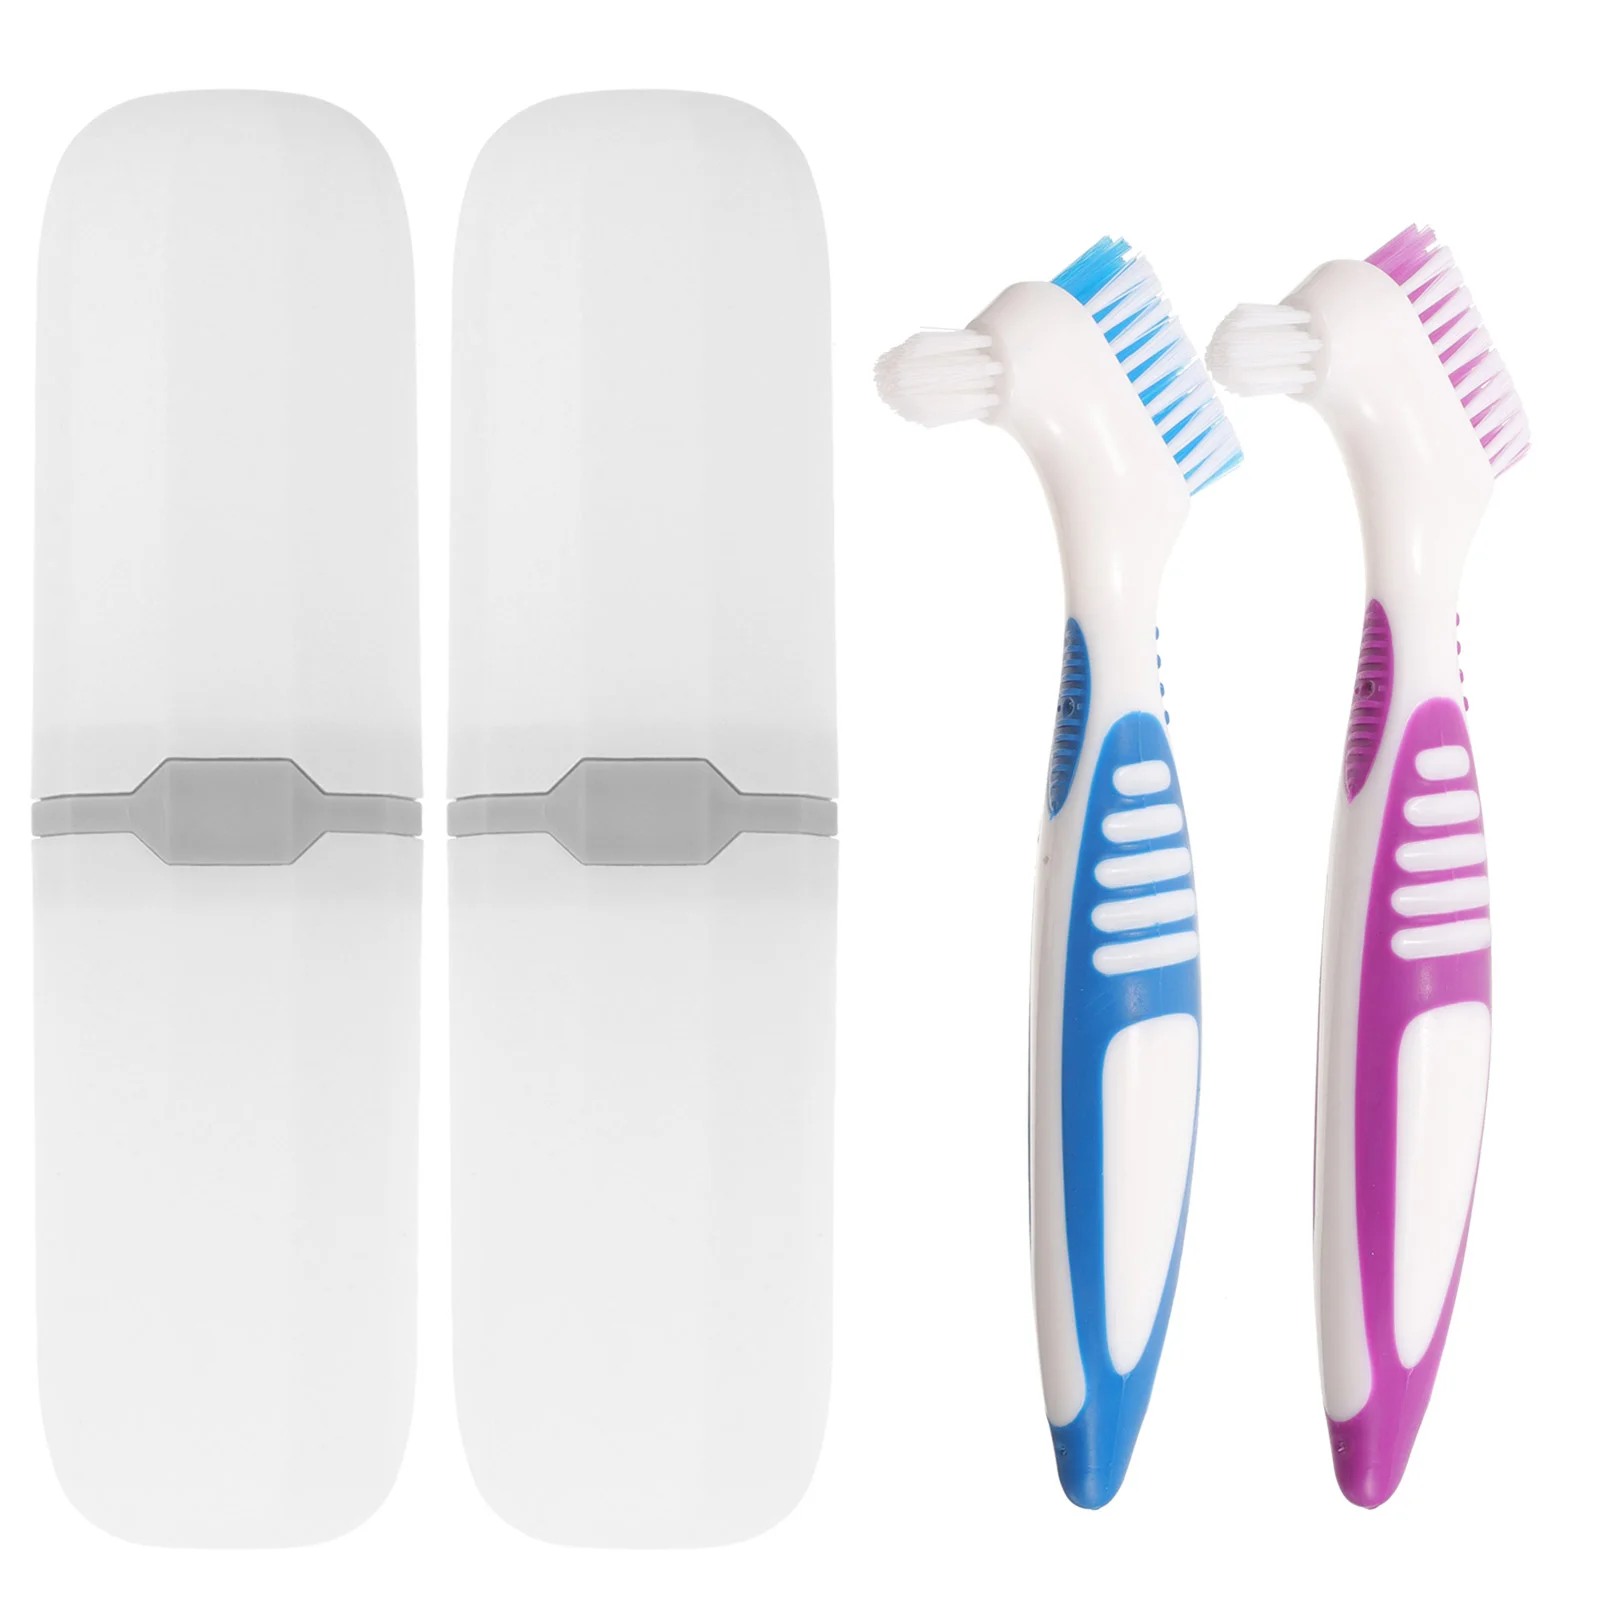 

2 набора чистых предметов и коробка для хранения искусственных зубов, угольная пластиковая Чистка зубных протезов